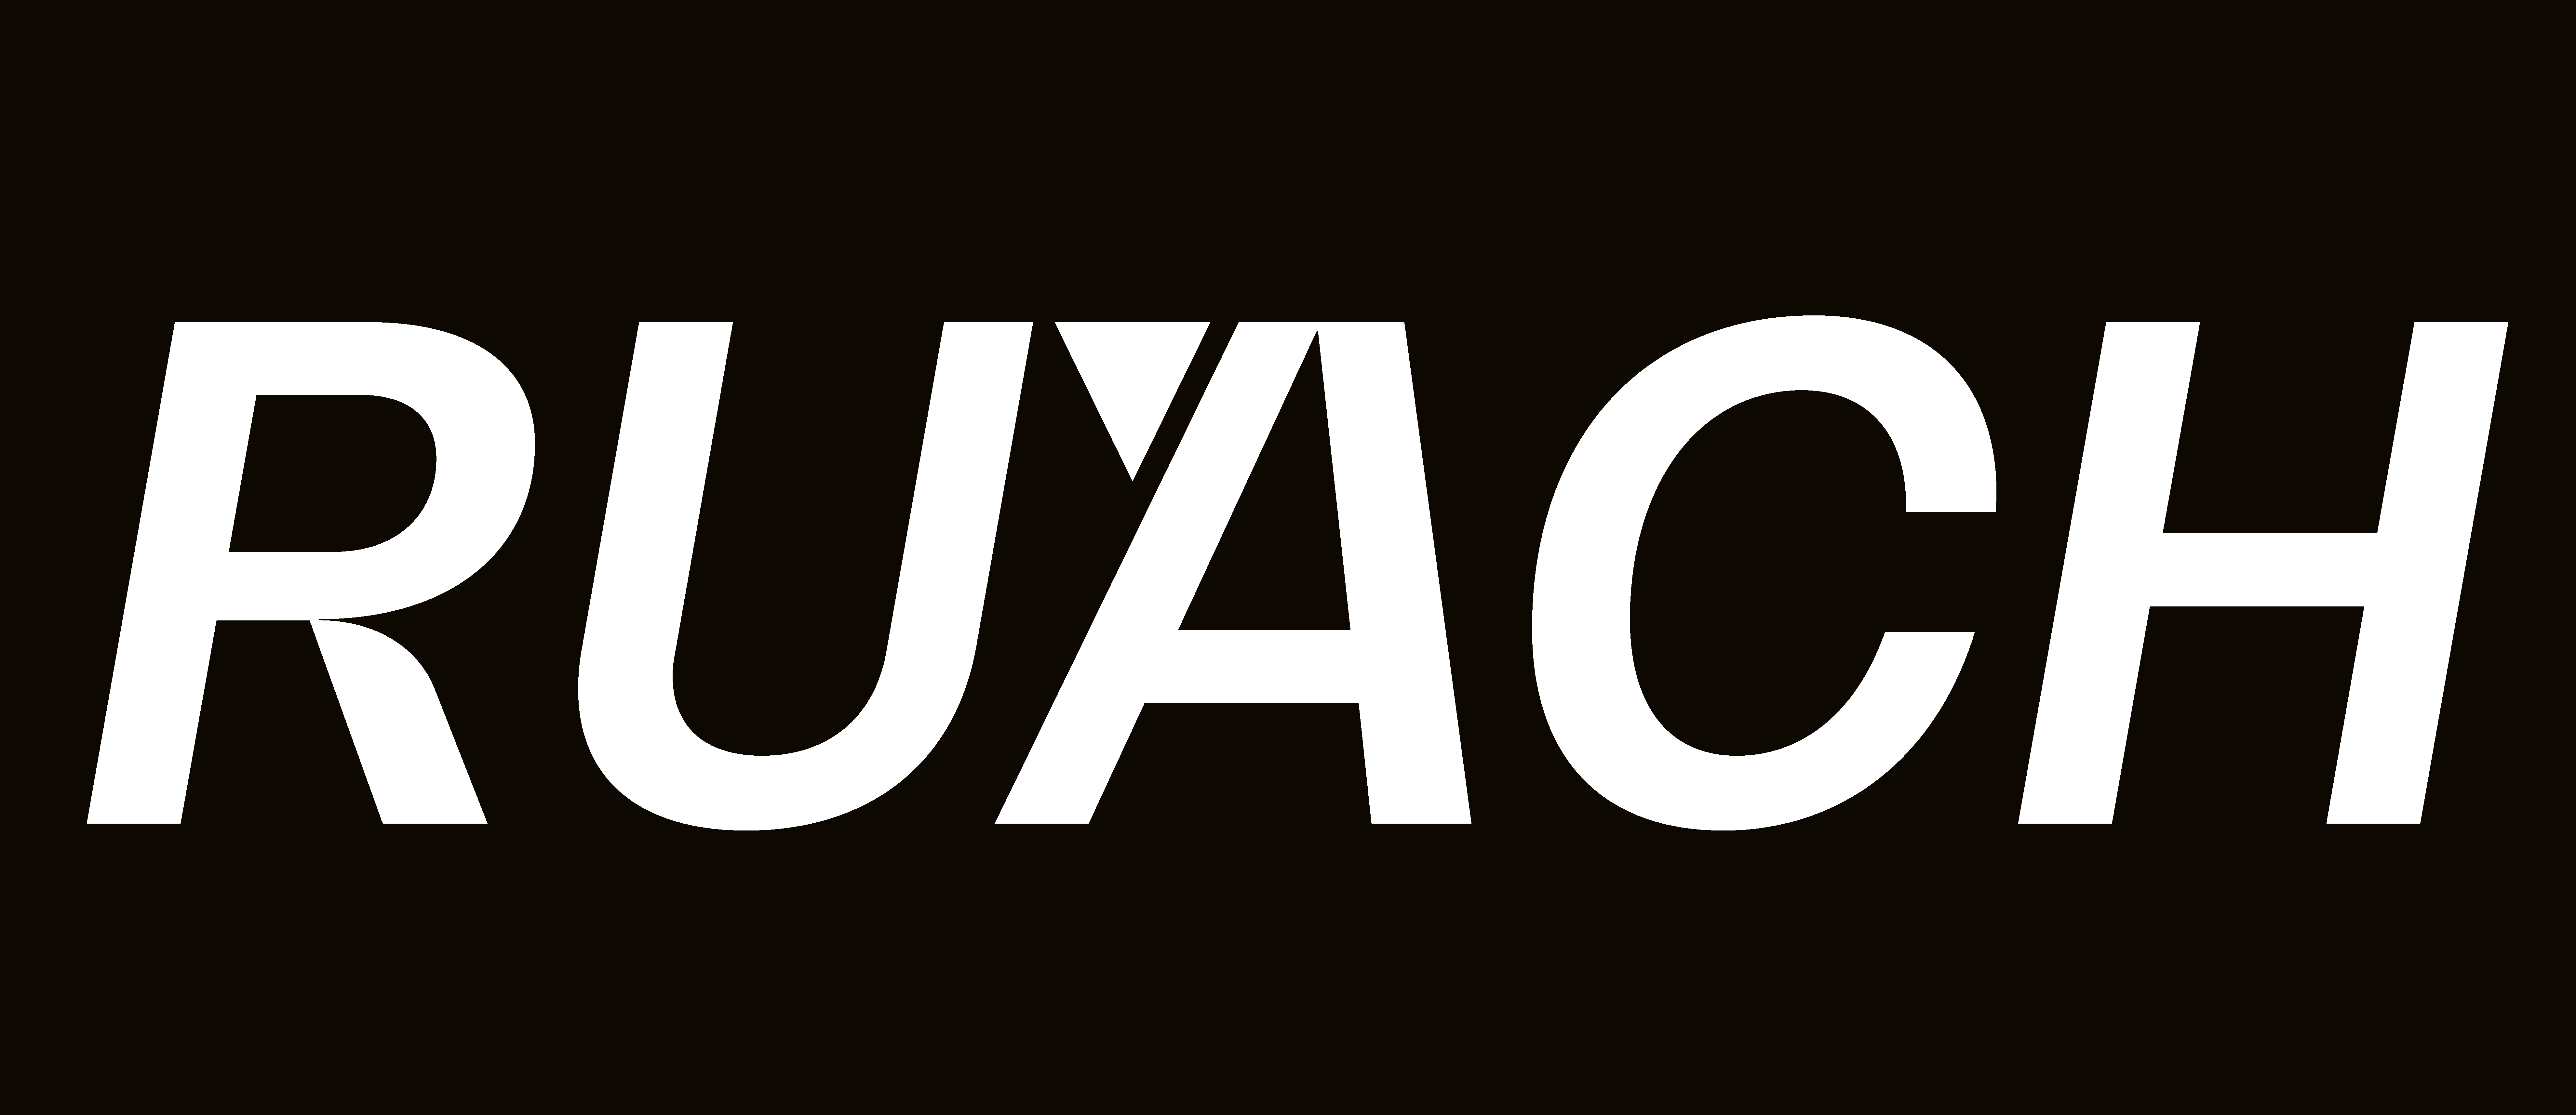 Ruach logo